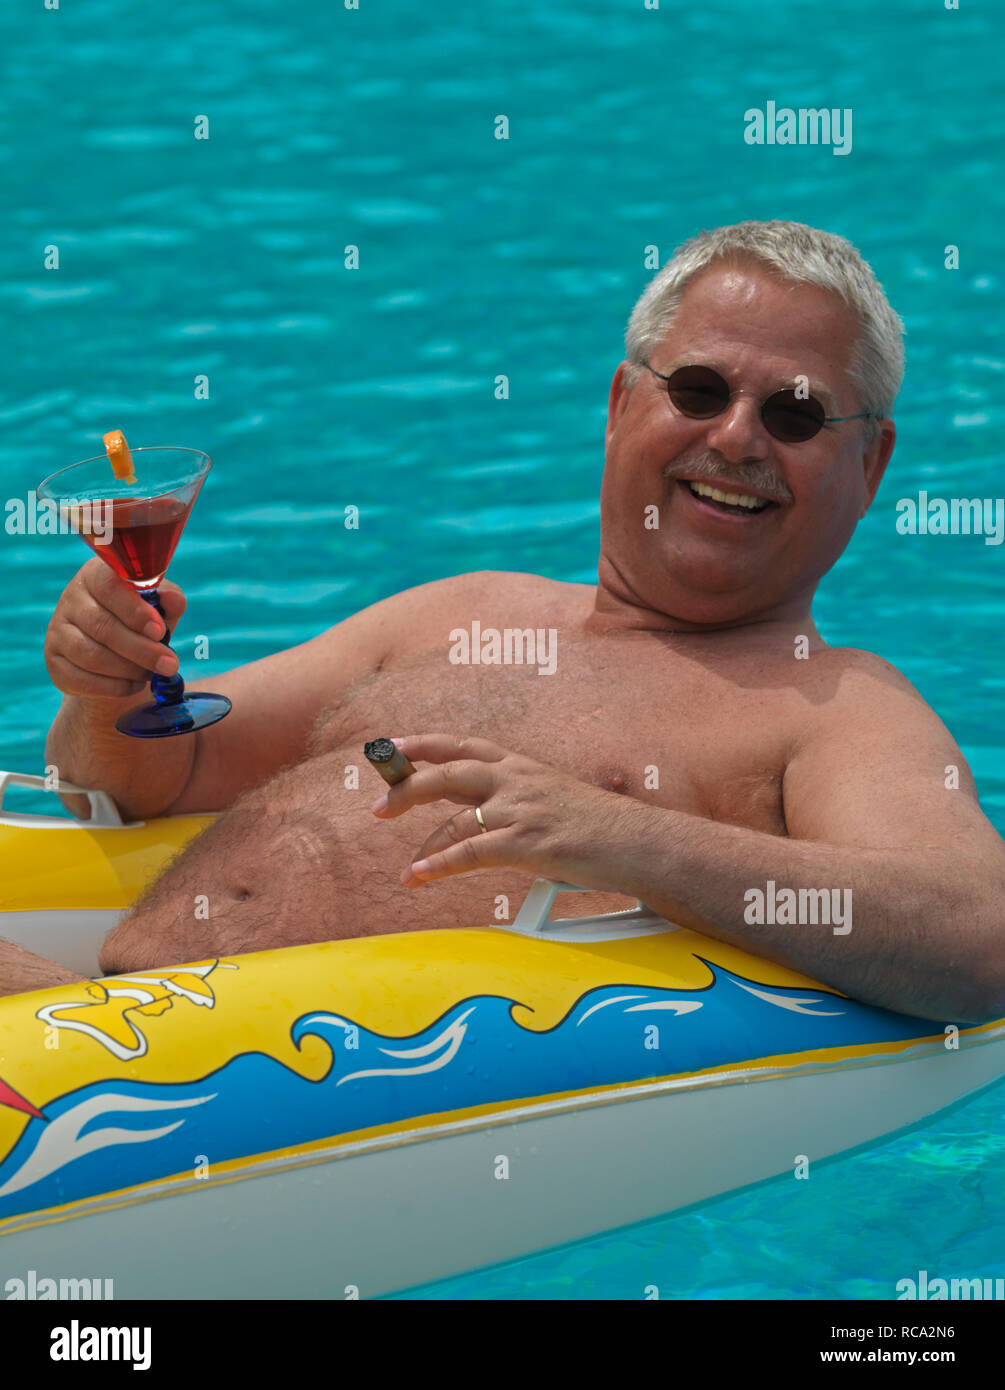 Älterer Mann genießt das Leben im kleinen im Schlauchboot Piscine d'| homme âgé avec un canot en caoutchouc dans la piscine Banque D'Images